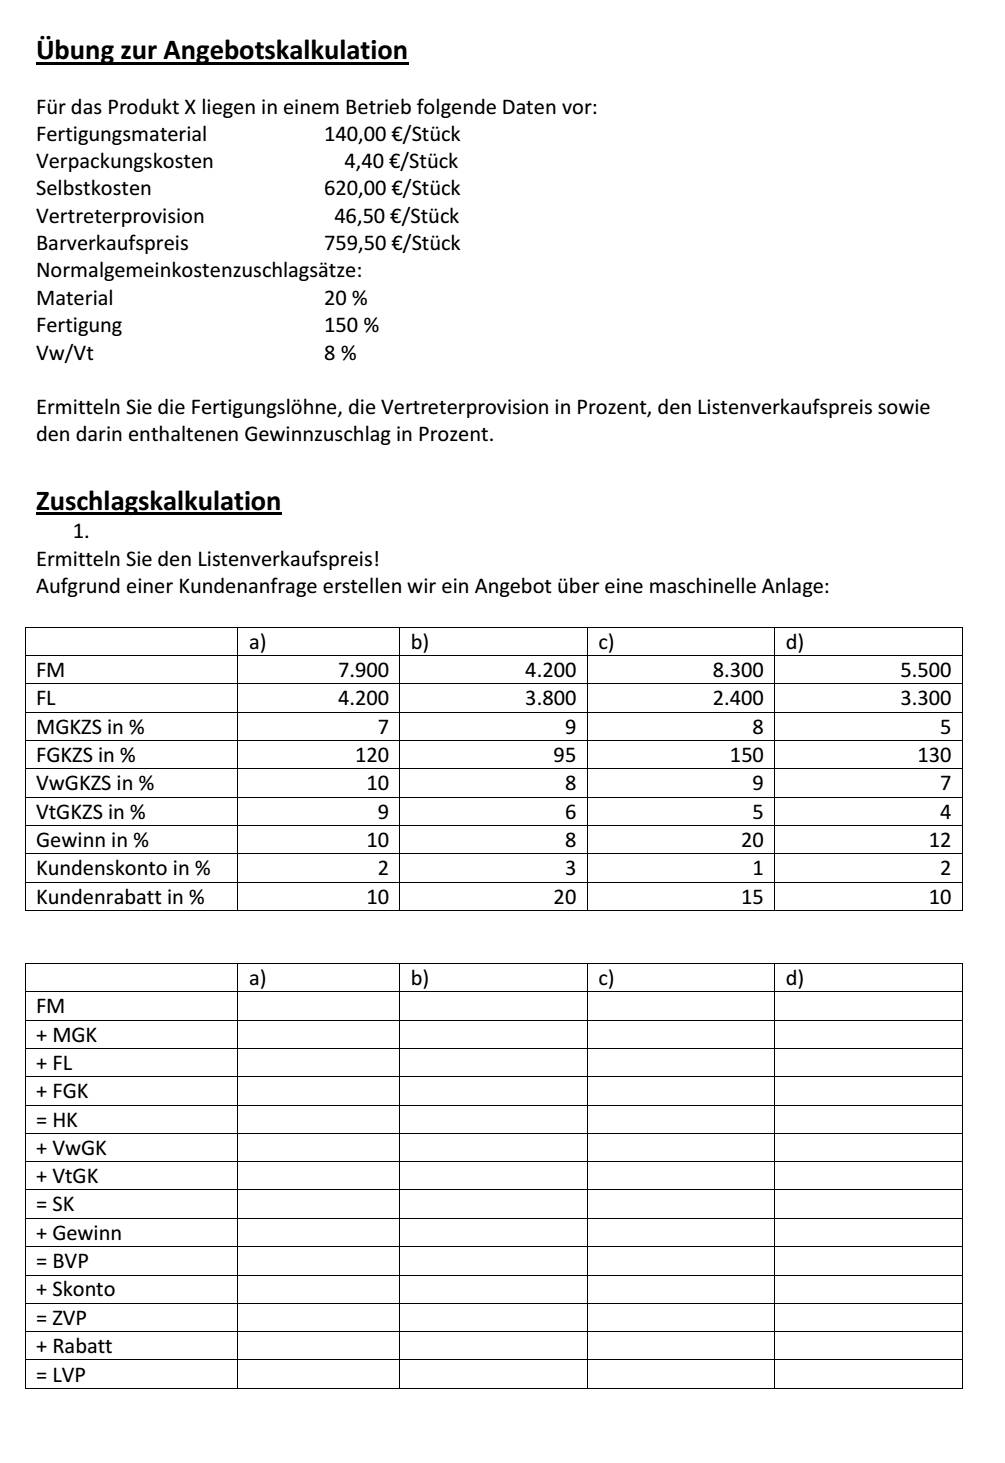  (image: https://hssm.hqedv.de/uploads/Zuschlags-Angebotskalkulation/KLRKalkulation12.jpg) 